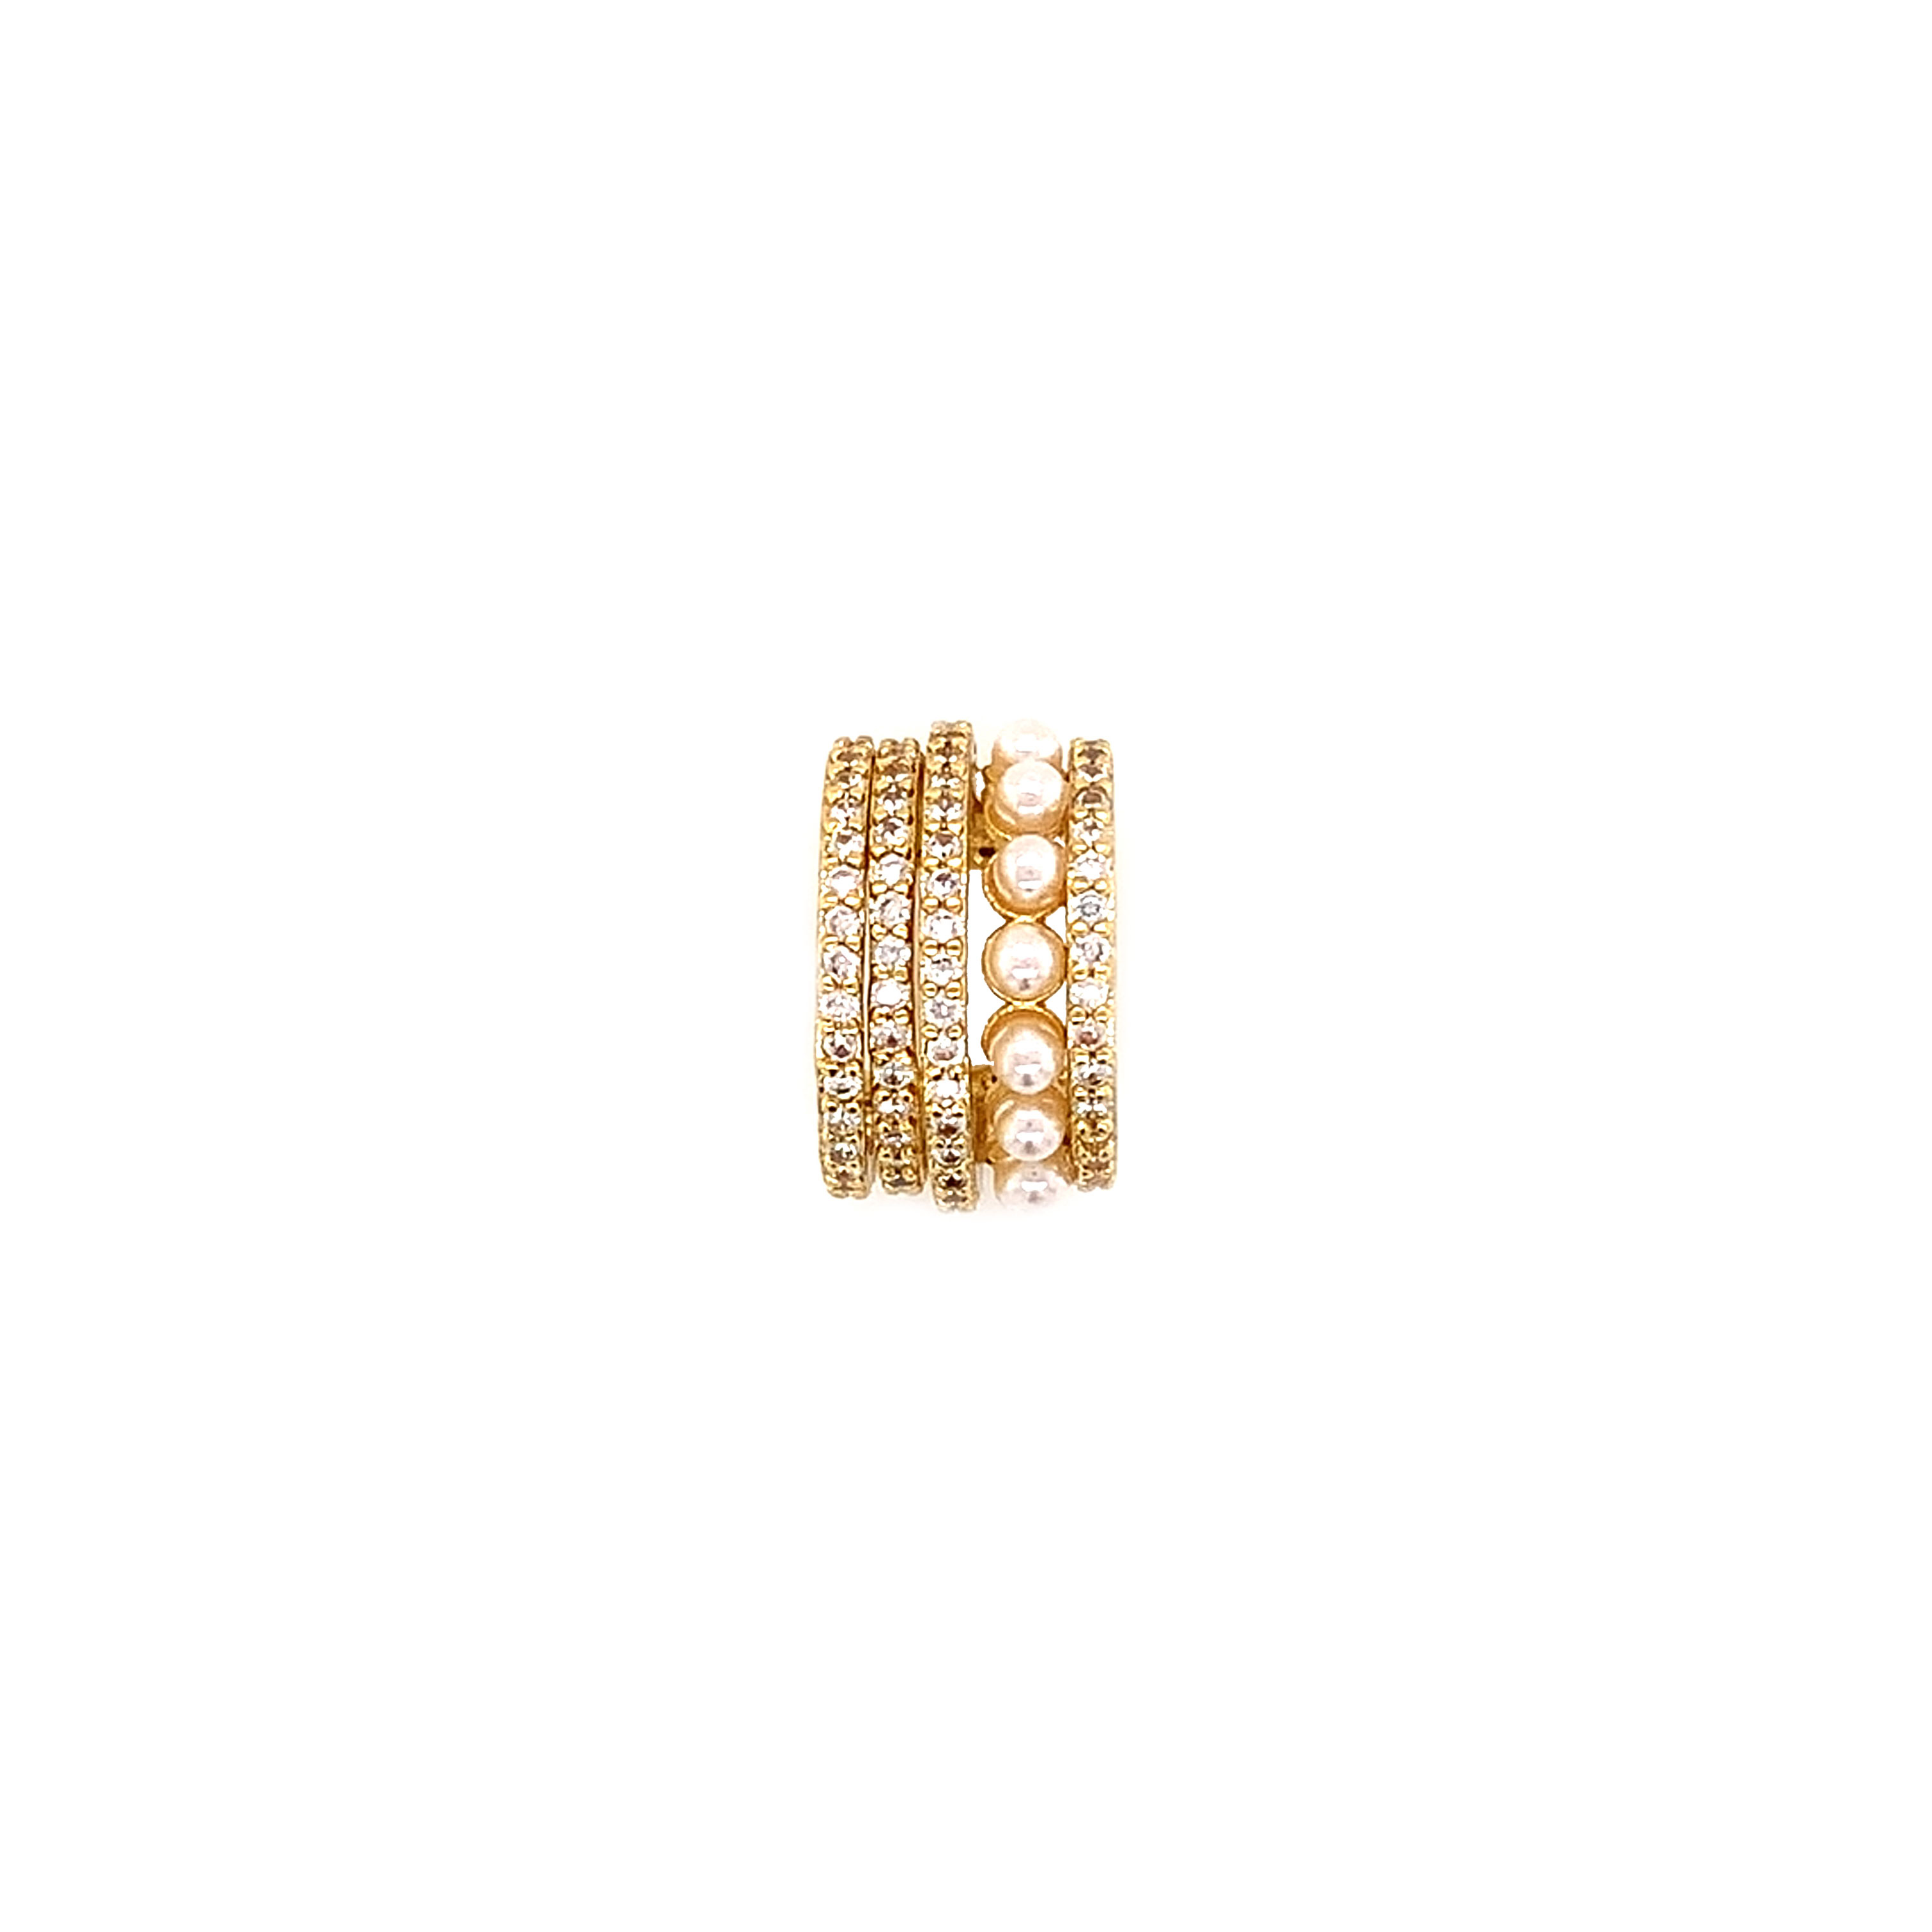 CZ Pearl Dome Ear Cuff - Price Per Piece - Gold Plated